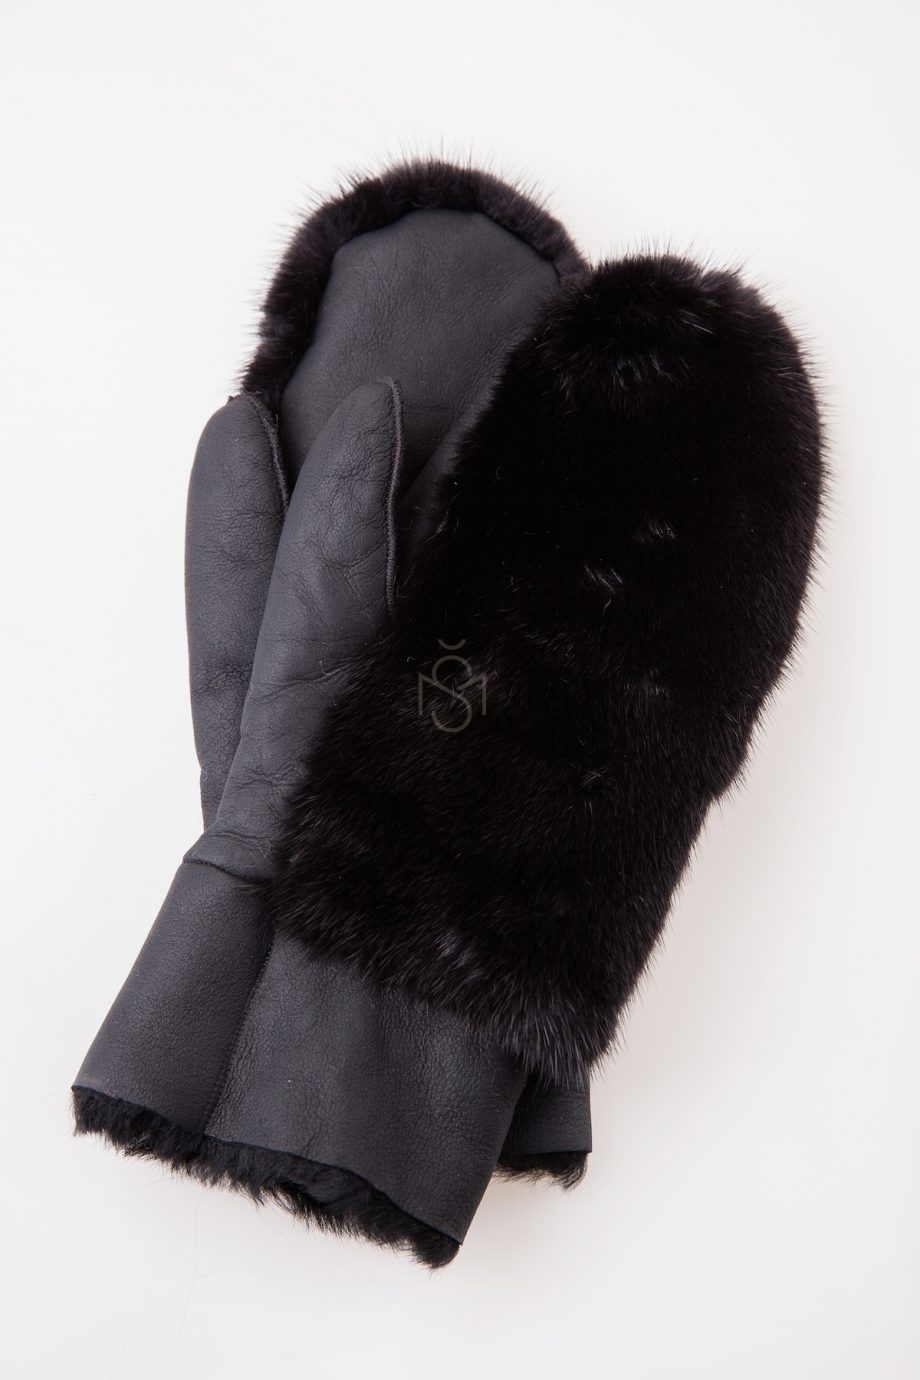 Sheepskin mittens with mink fur black made by Silta Mada fur studio in Villnius